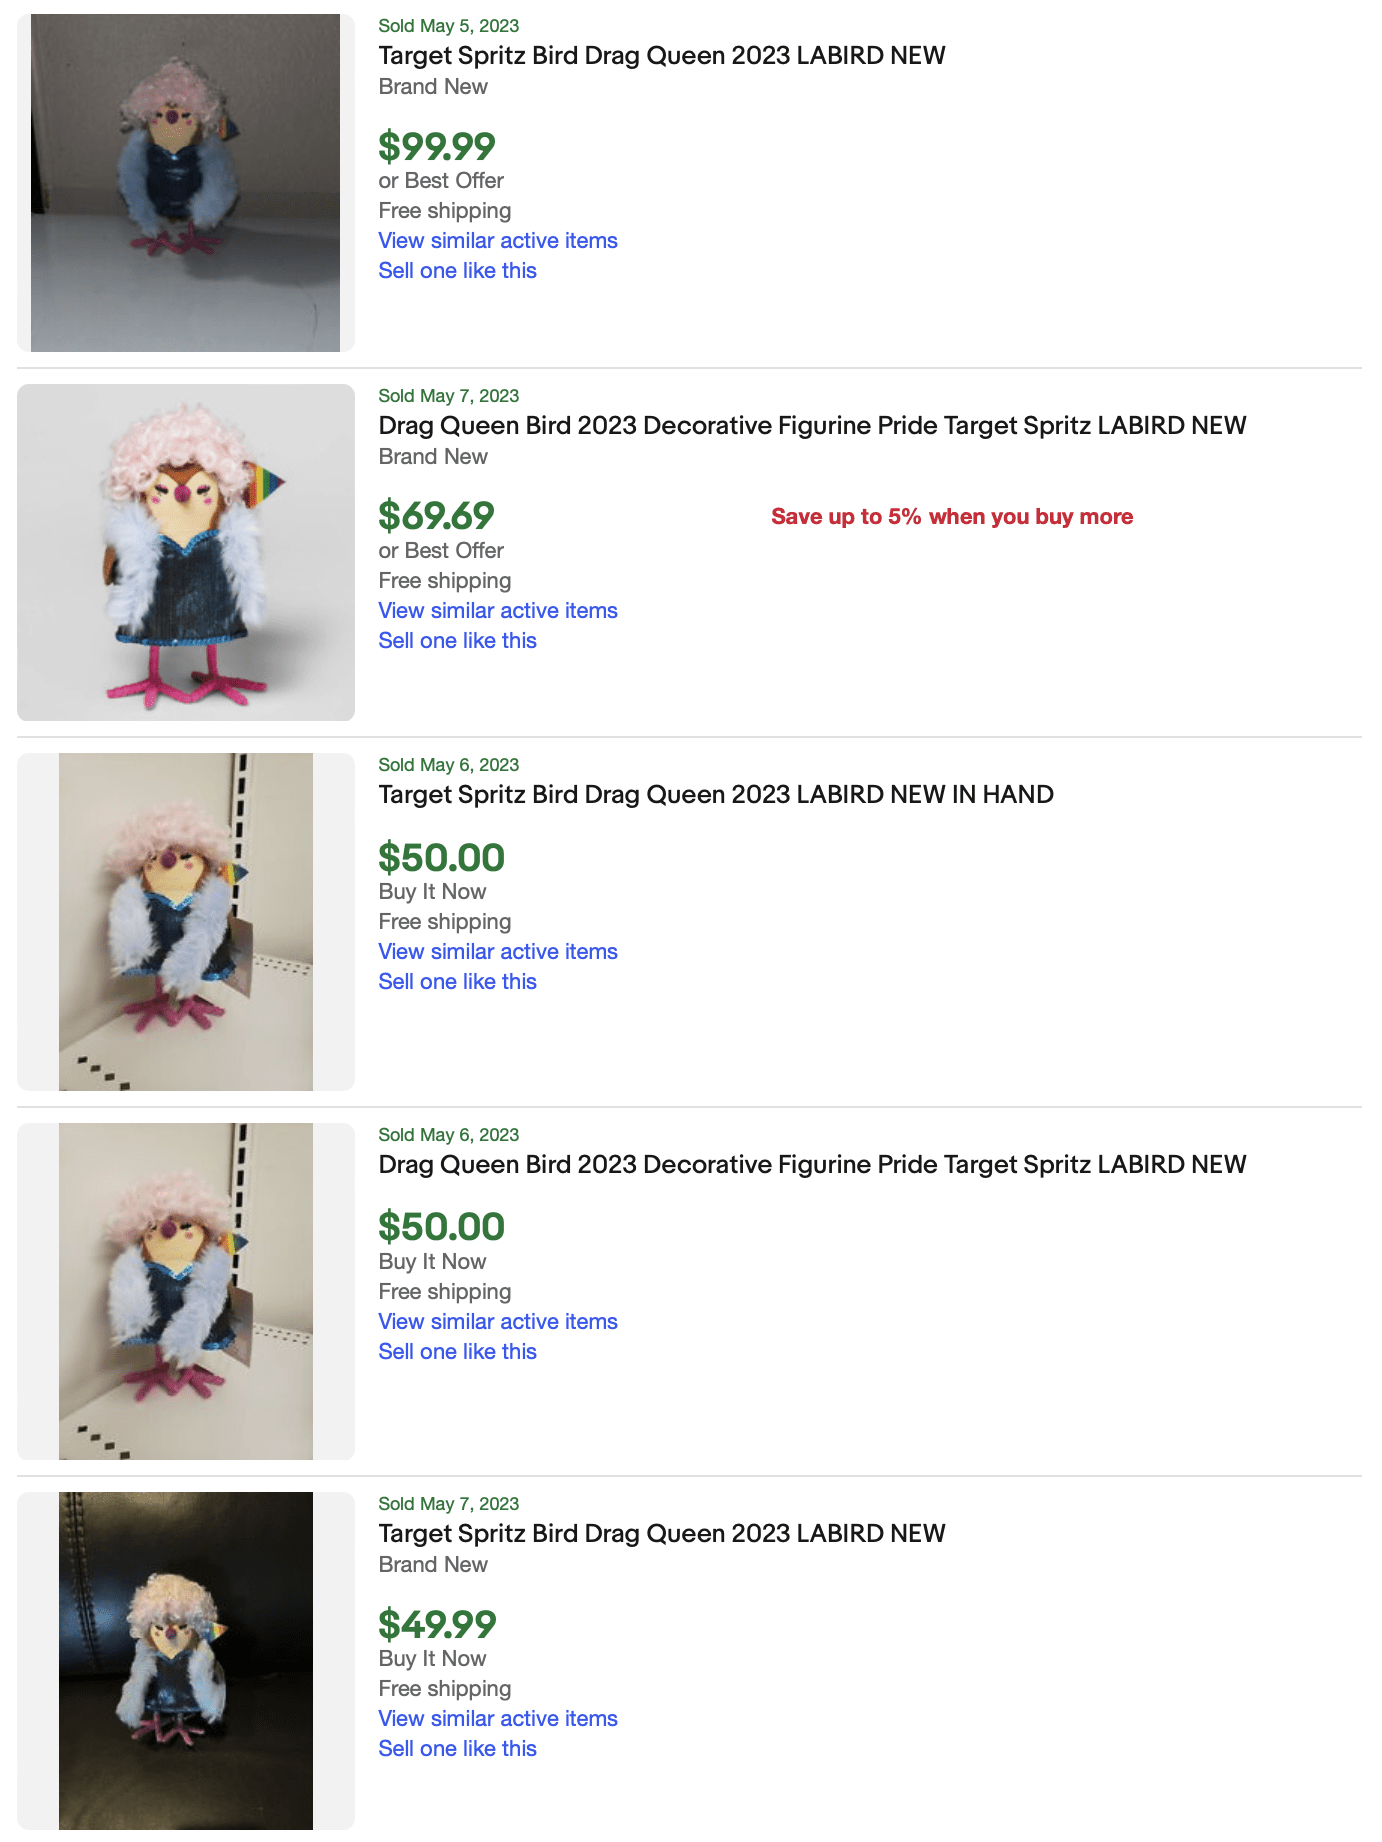 Target Drag Queen Labird for sale eBay